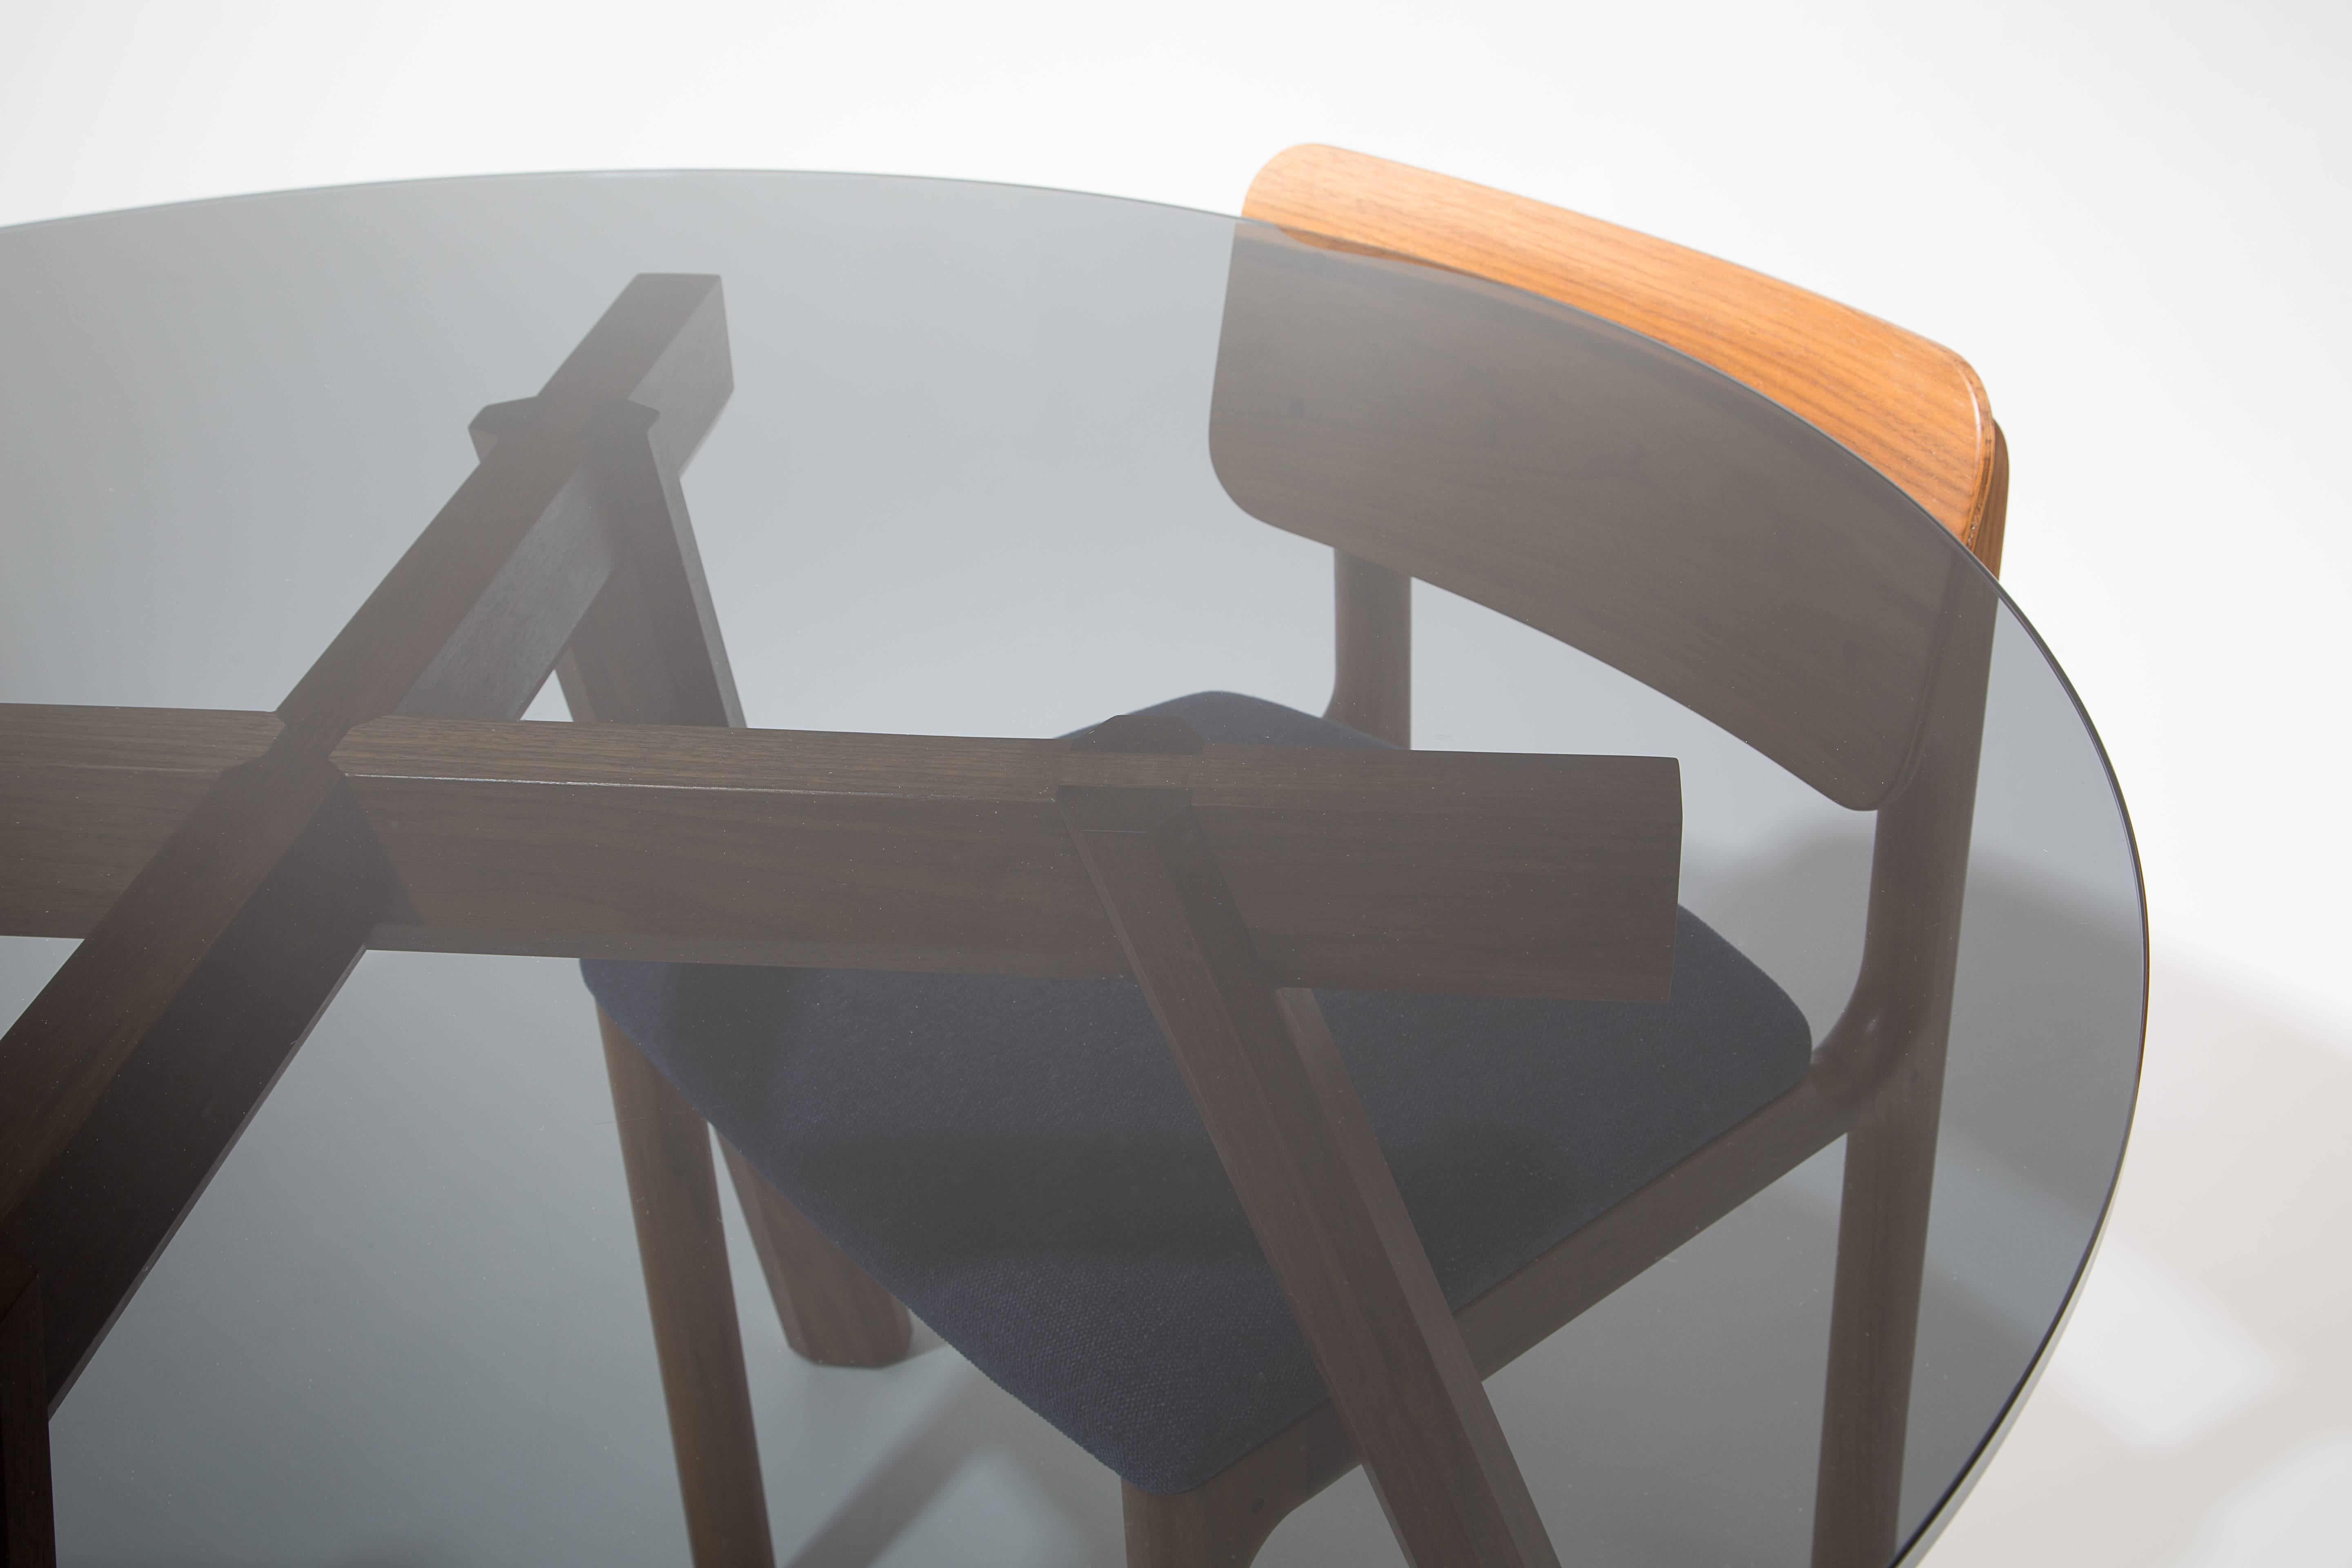 Der Ripley-Esstisch wird in unserem Studio in Louisville, KY, von Hand aus hochwertigen Harthölzern gefertigt. Der Sockel ist mit traditionellen Tischlerarbeiten konstruiert, und diese Tischlerarbeiten sind durch die Glasplatte zu sehen. Die